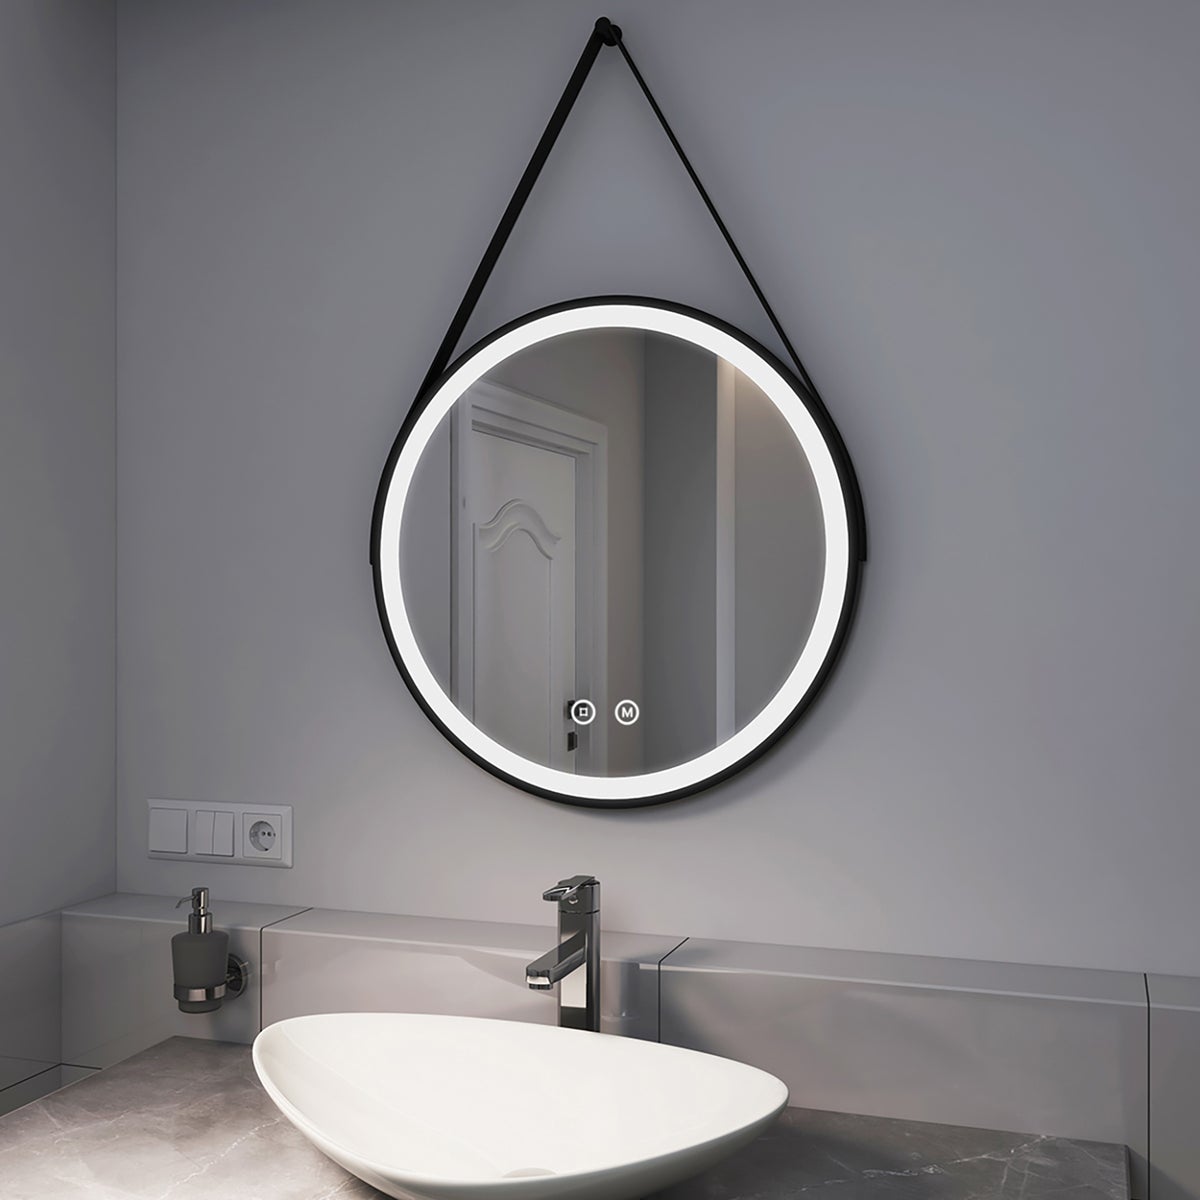 EMKE Badspiegel mit Beleuchtung Schwarz Rahmen und Riemen ф60cm, 3 Lichtfarben,Dimmbar